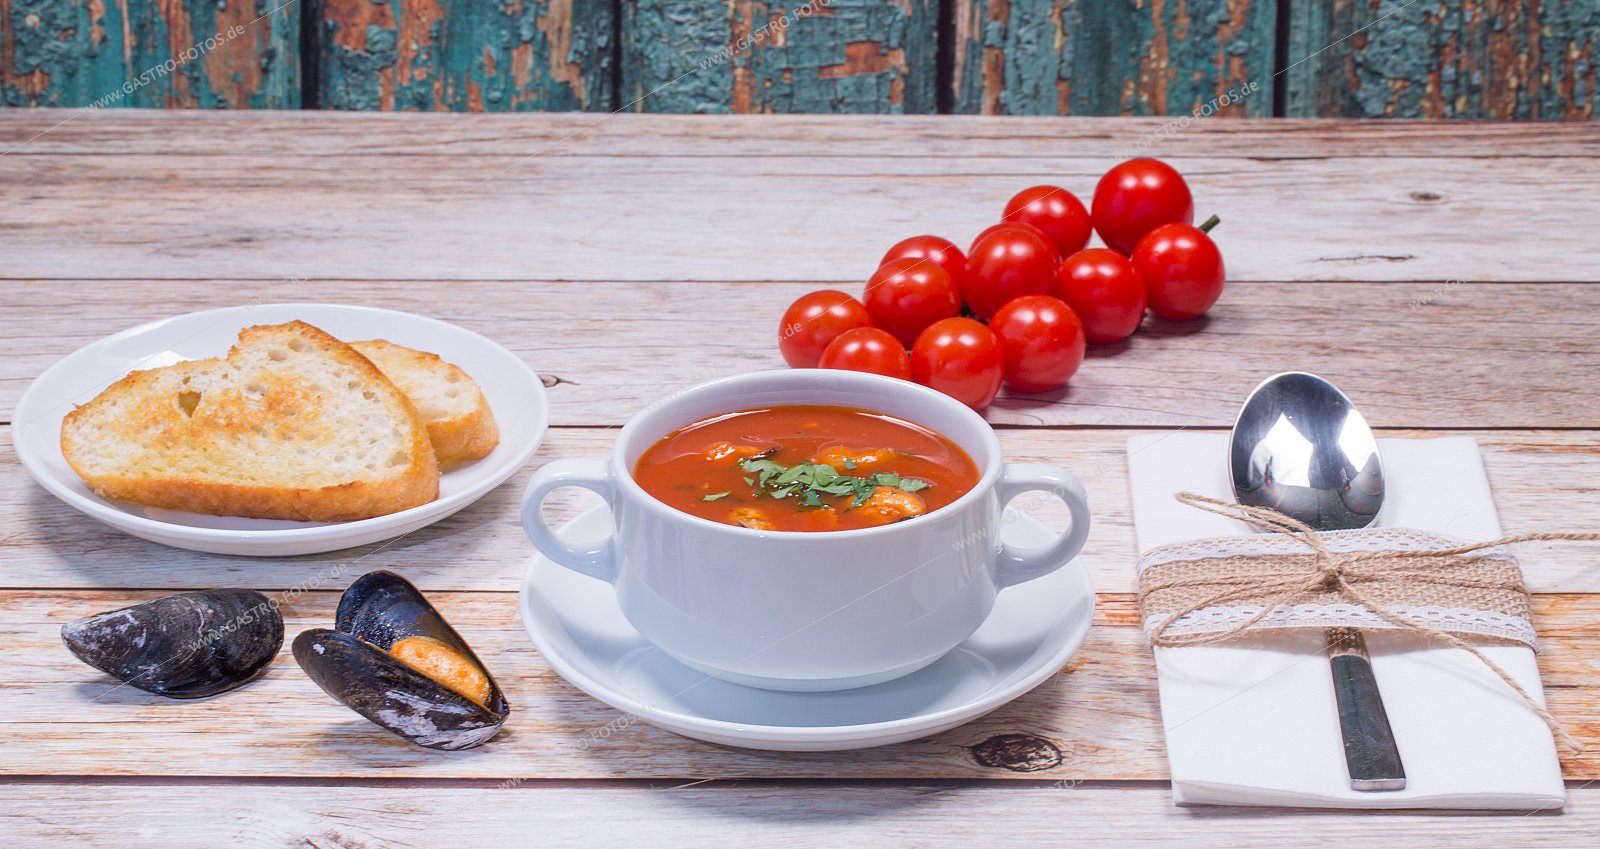 Tomatensuppe mit Miesmuscheln - Suppen & Eintöpfe mit Meeresfrüchten